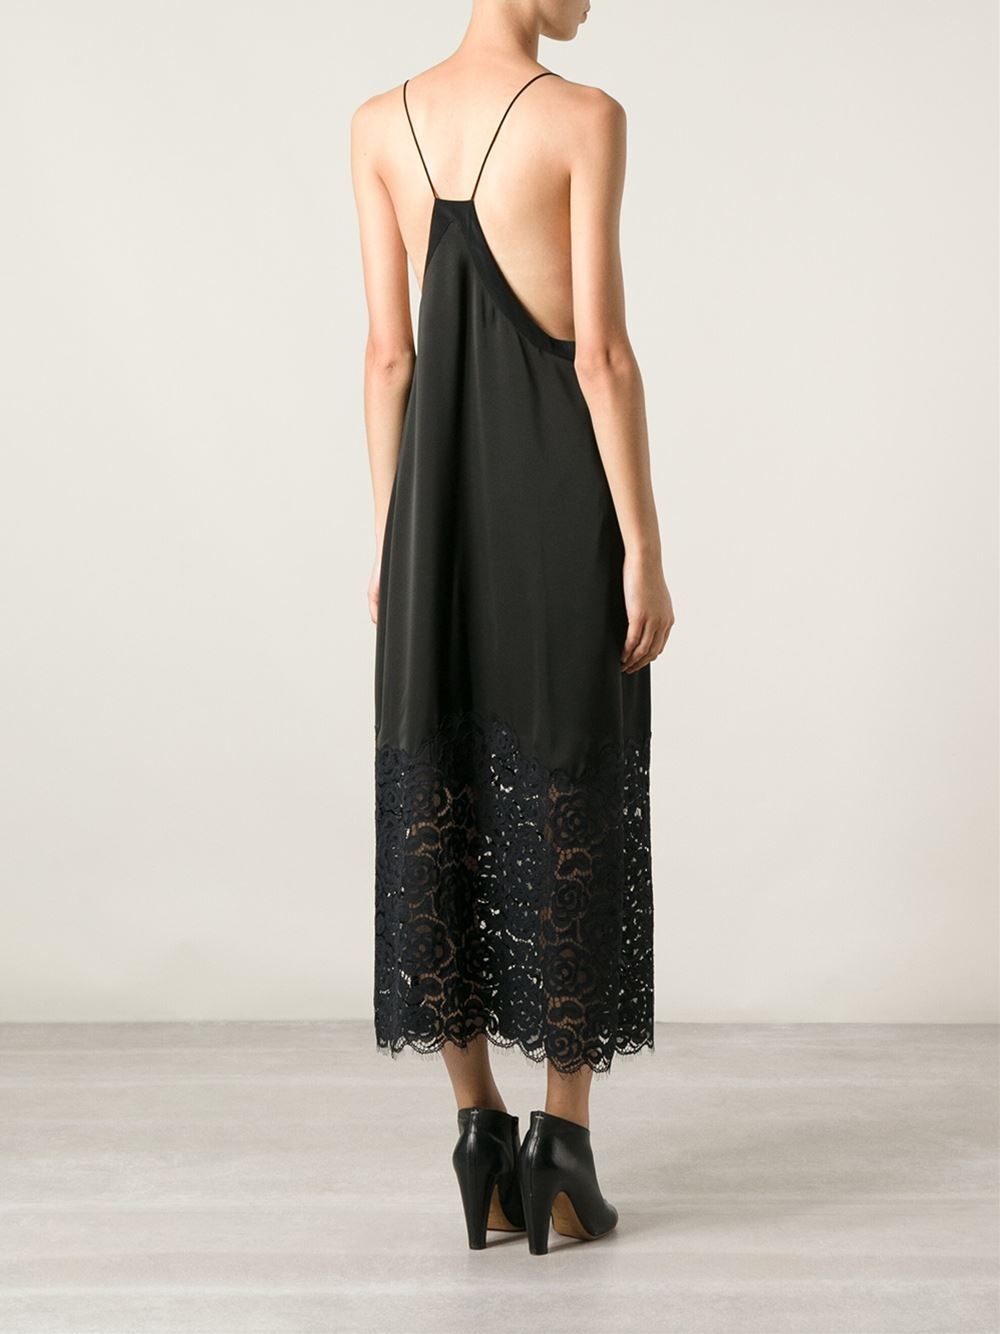 DKNY Lace Insert Long Slip Dress in Black - Lyst